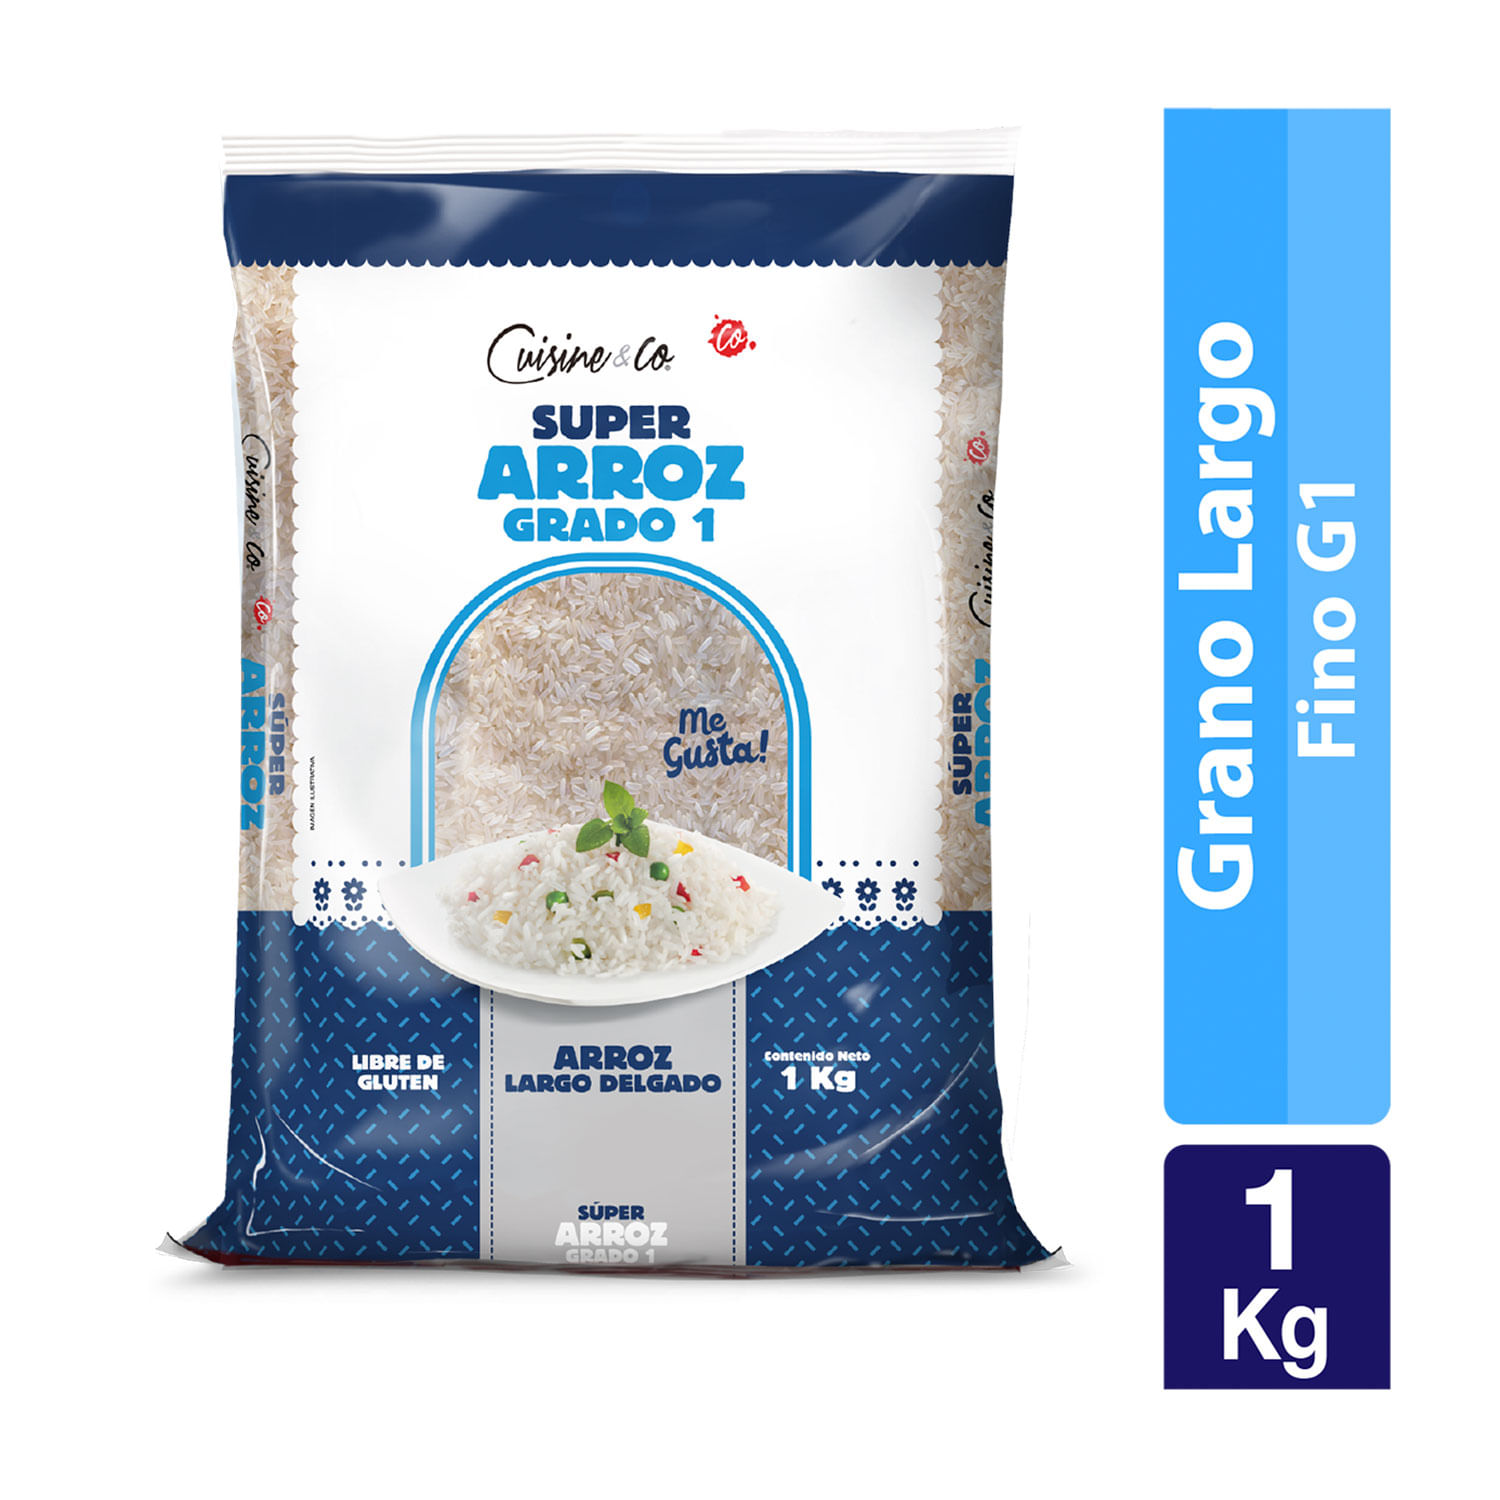 Cérélac blé 400 grs + Lait Nido 900 grs - Carrefour CM